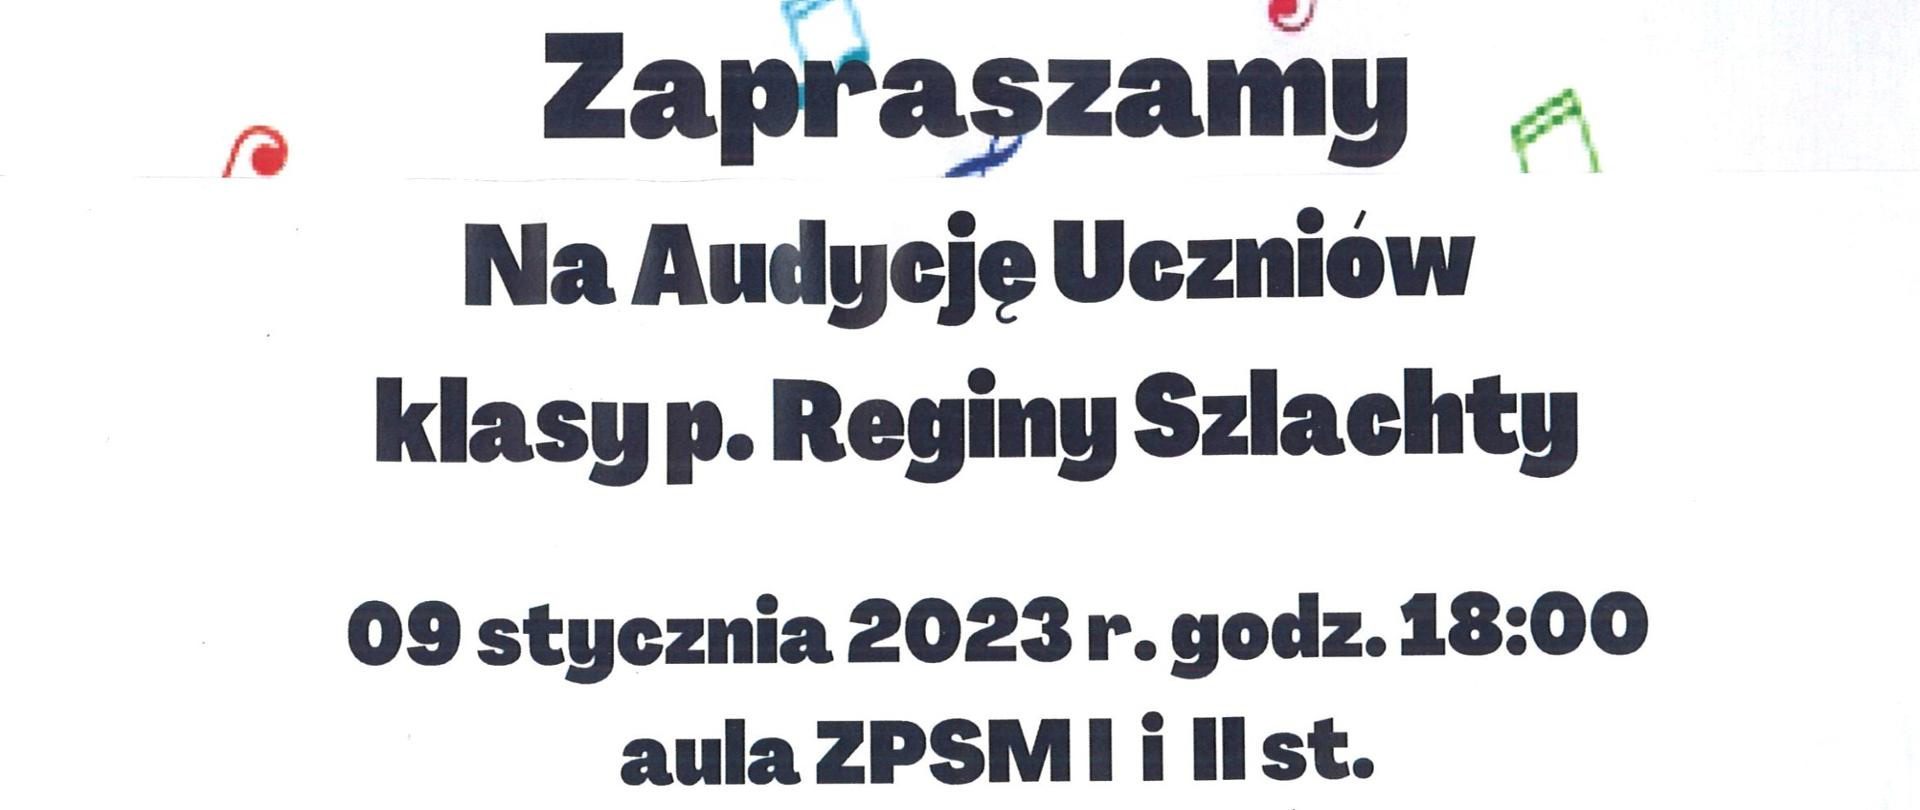 Plakat - zaproszenie na audycję uczniów klasy p. Reginy Szlachty, który odbędzie się 9 stycznia 2023r. o godz. 18:00 w auli ZPSM w Dębicy, w tle znajdują się kolorowe nutki